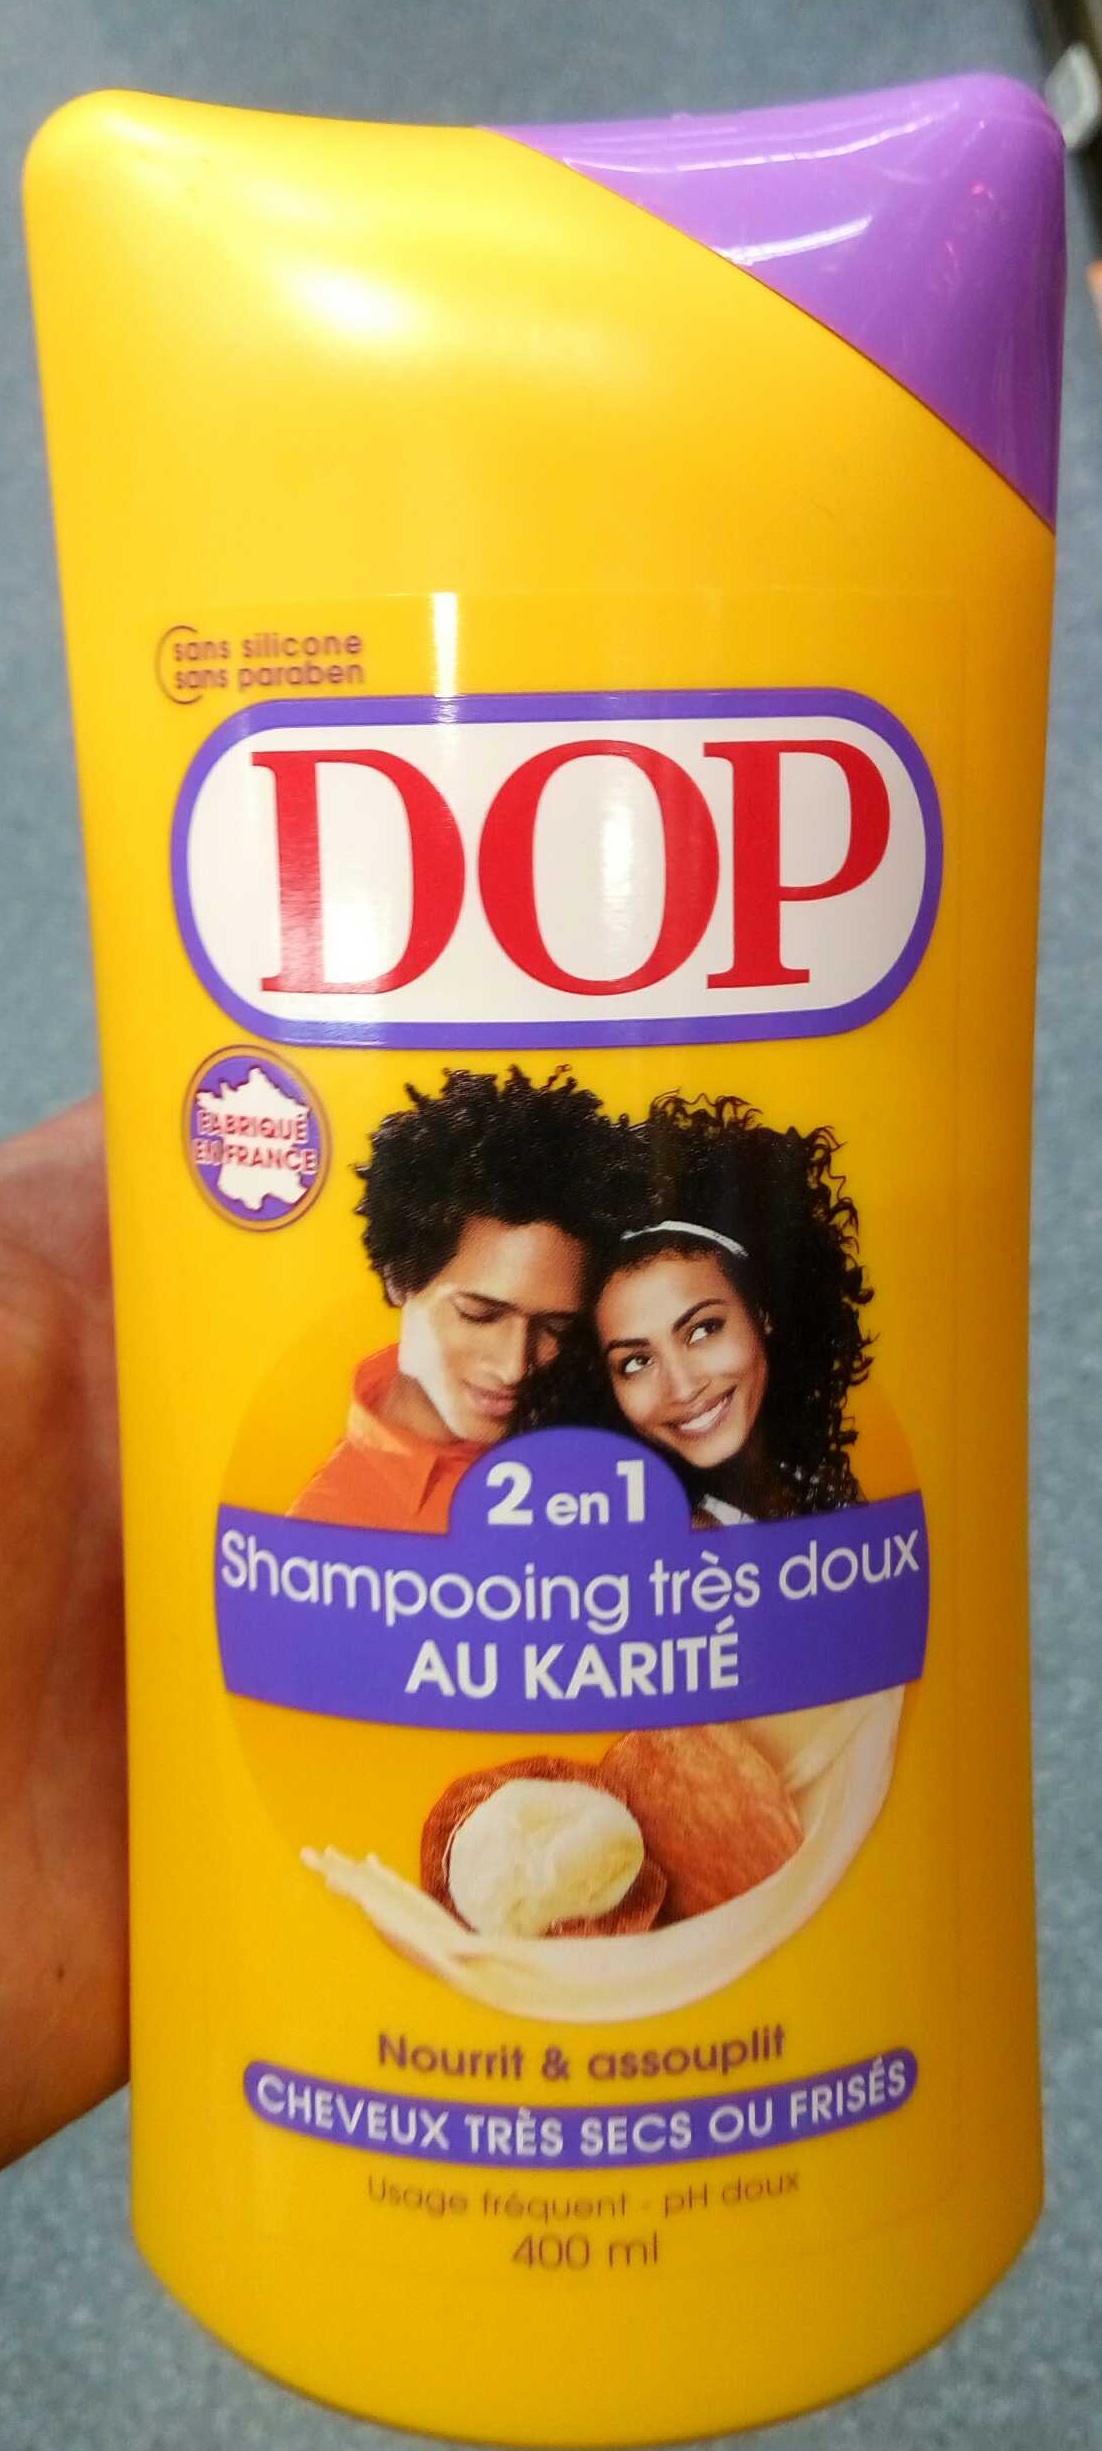 Shampooing très doux 2 en 1 au karité - Product - fr